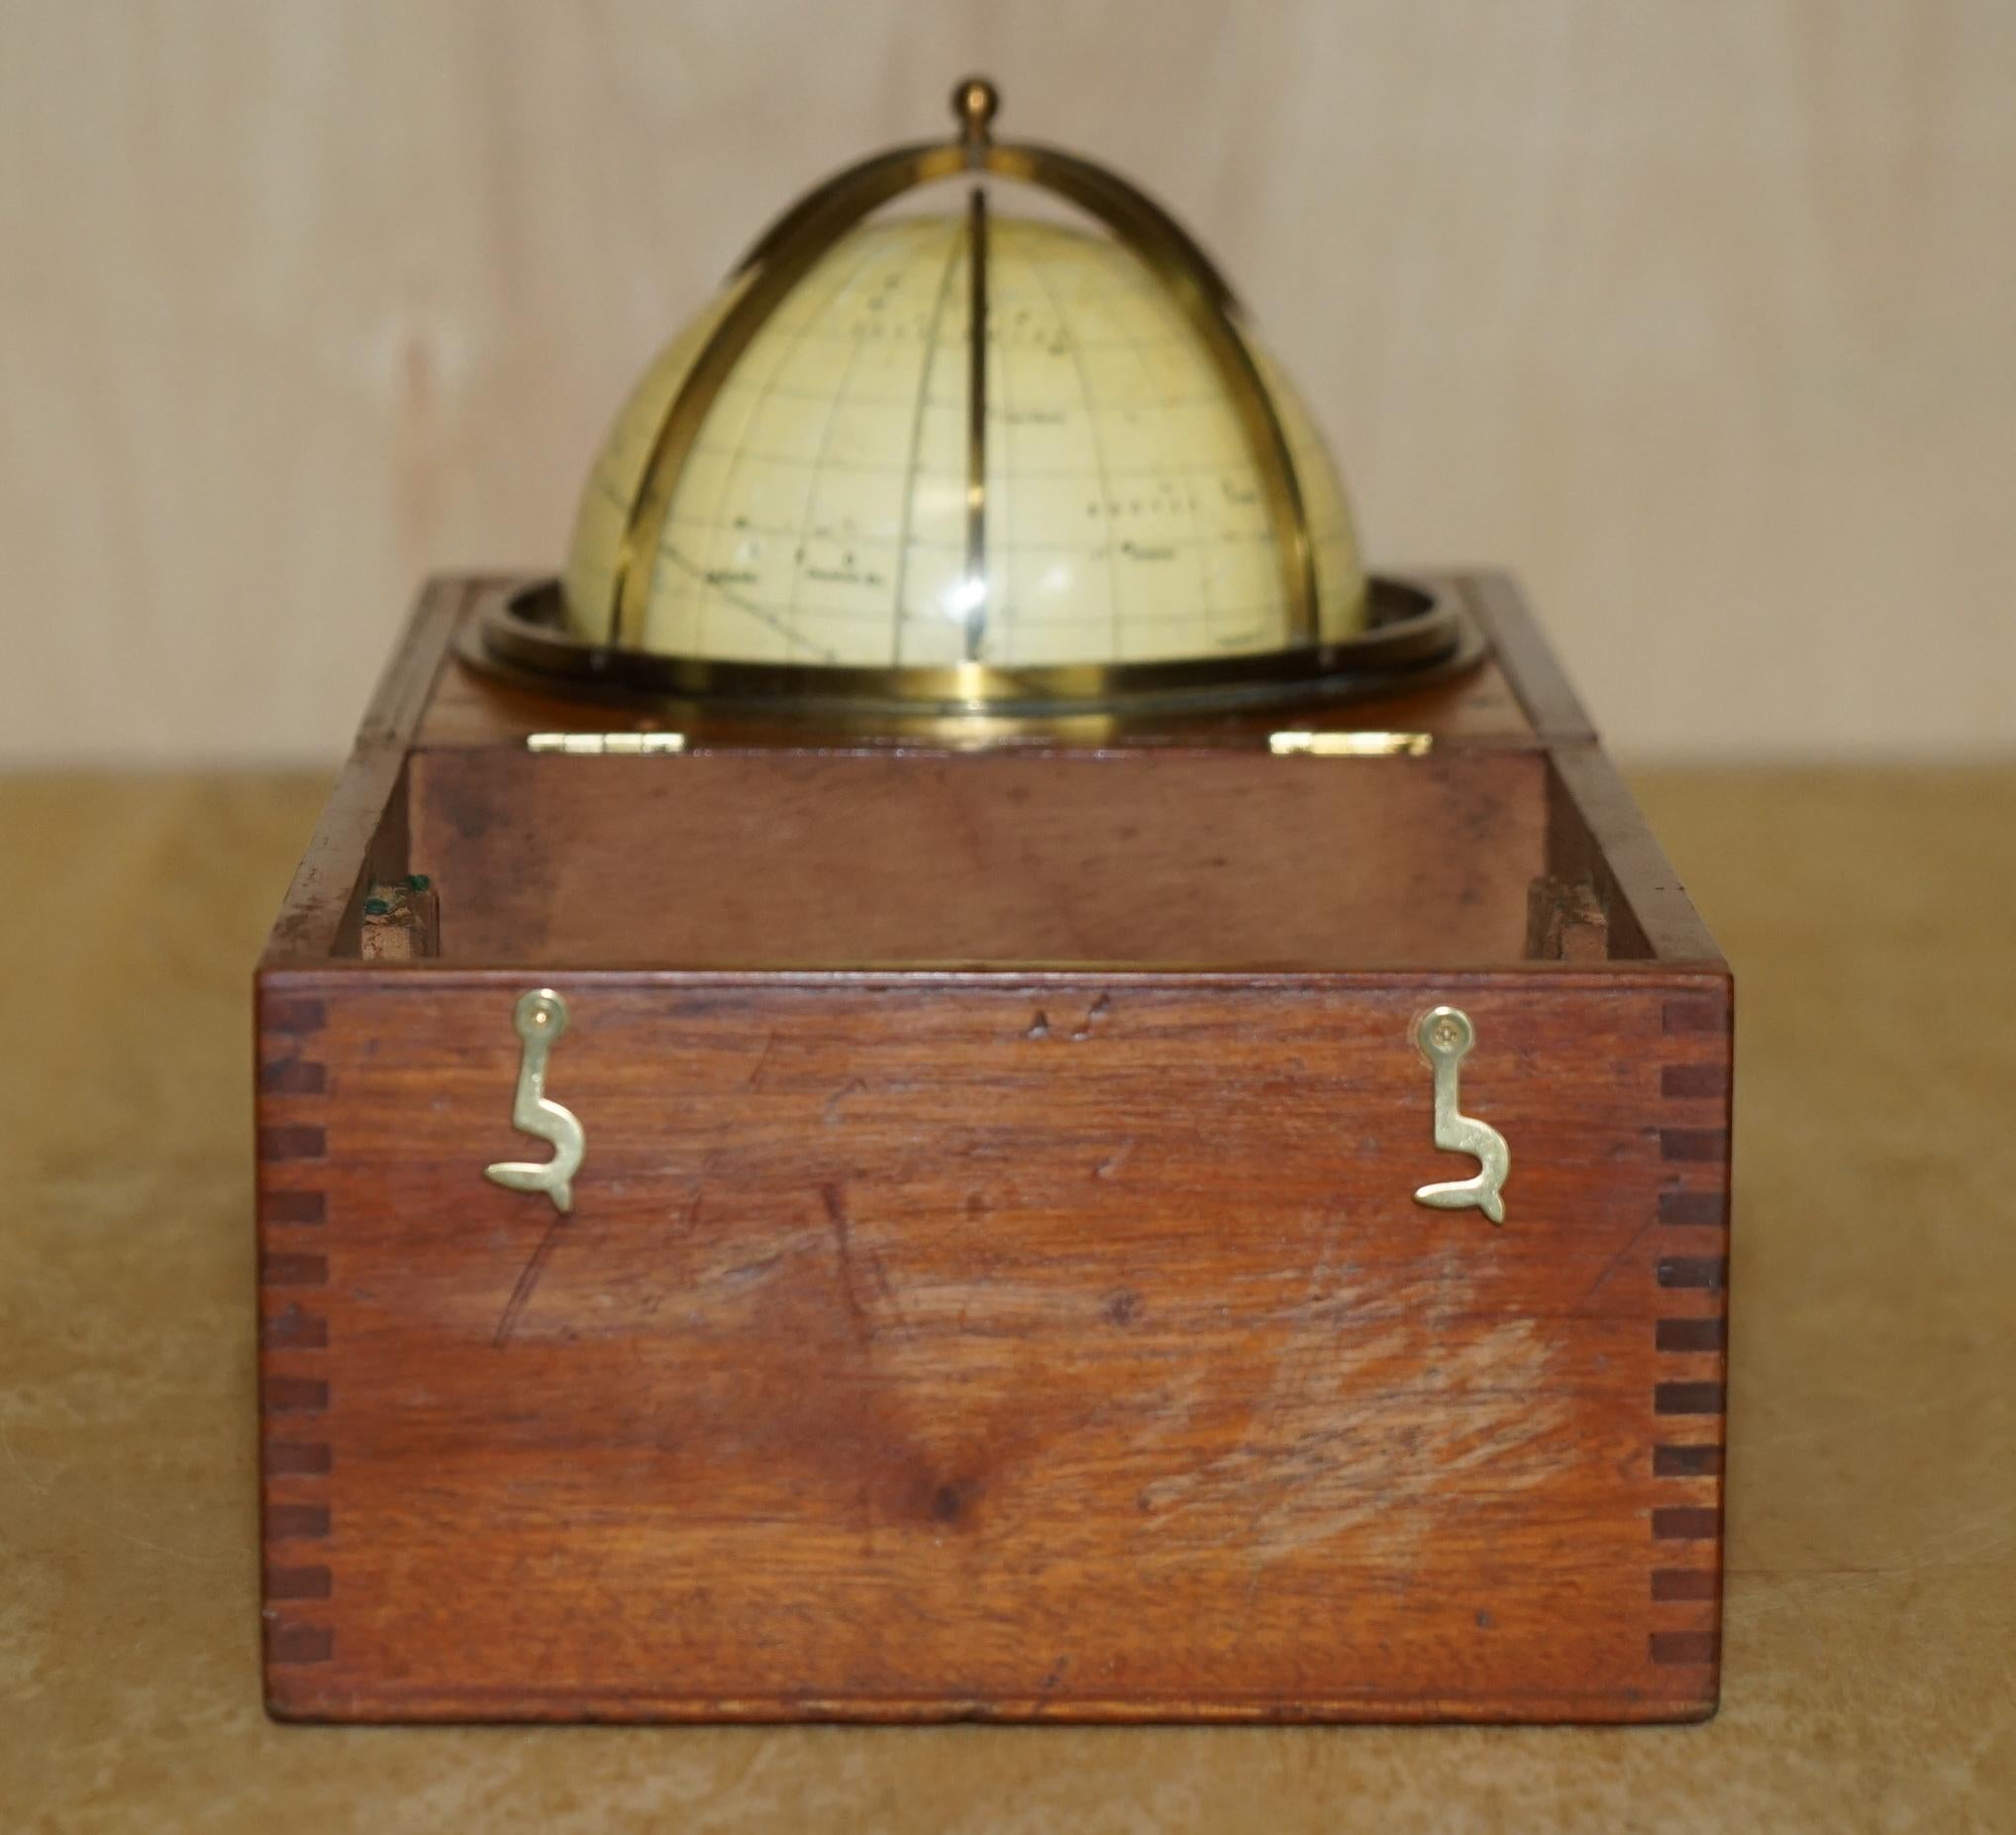 John Cary Travel Celestial Globe in Box Marked Cary & Co London, No. 21540 6